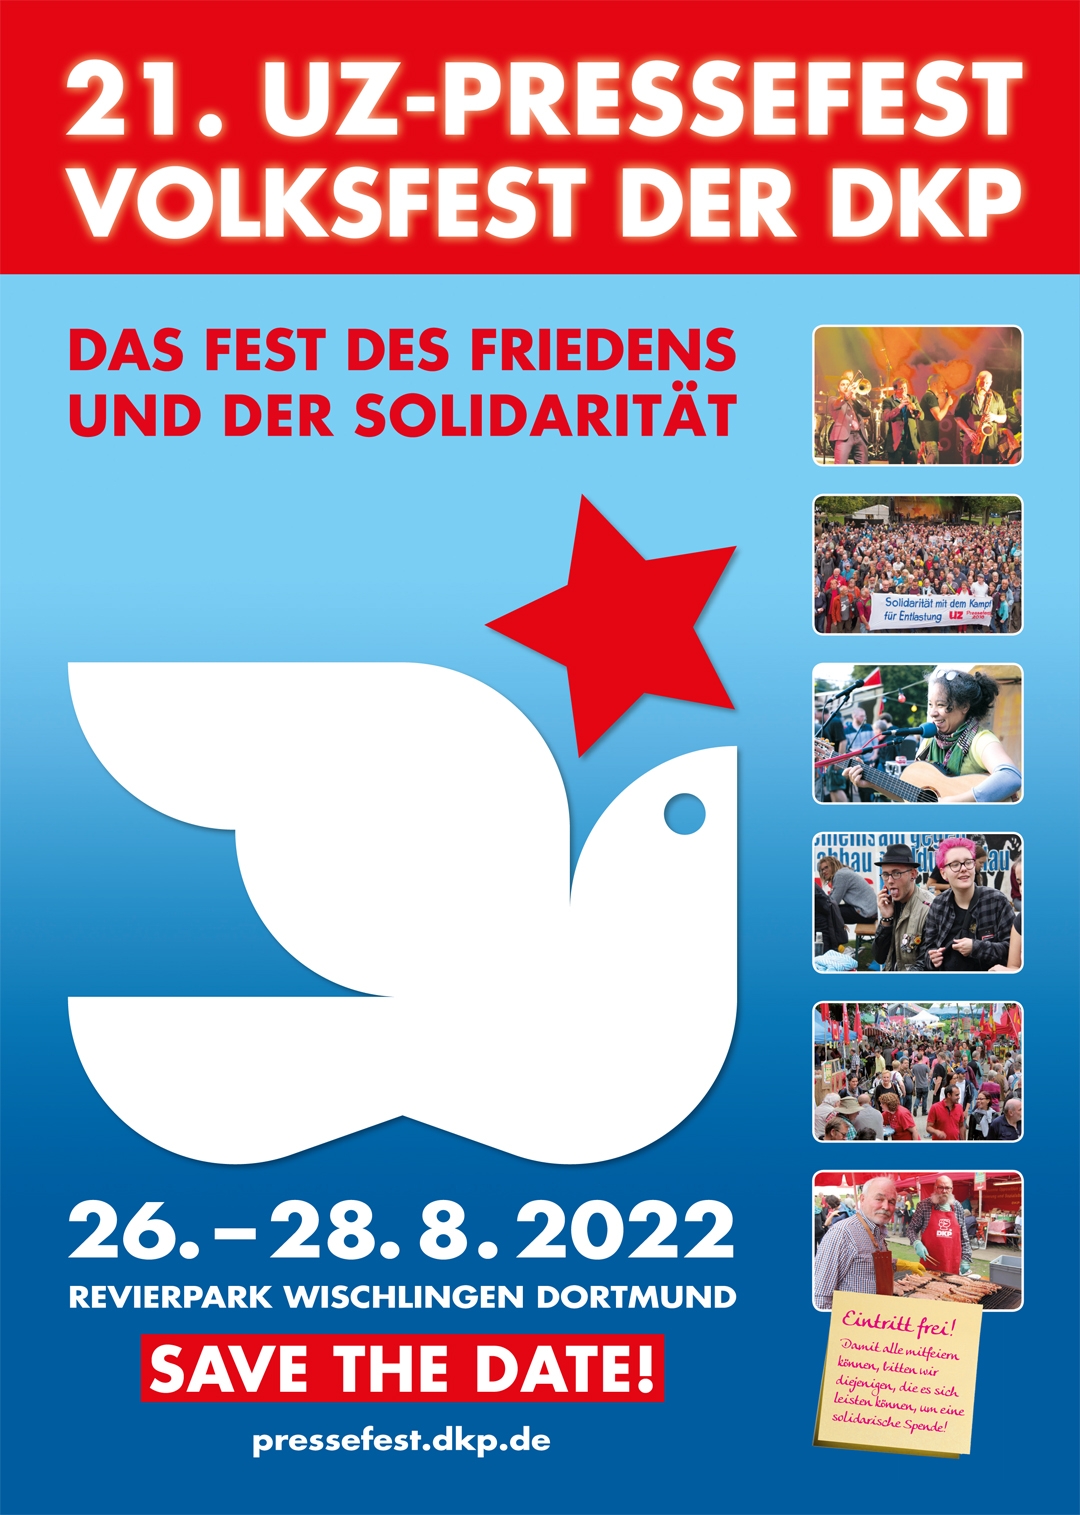 Aufruf der Berliner Krankenhausbewegung zur Unterstützerdemo